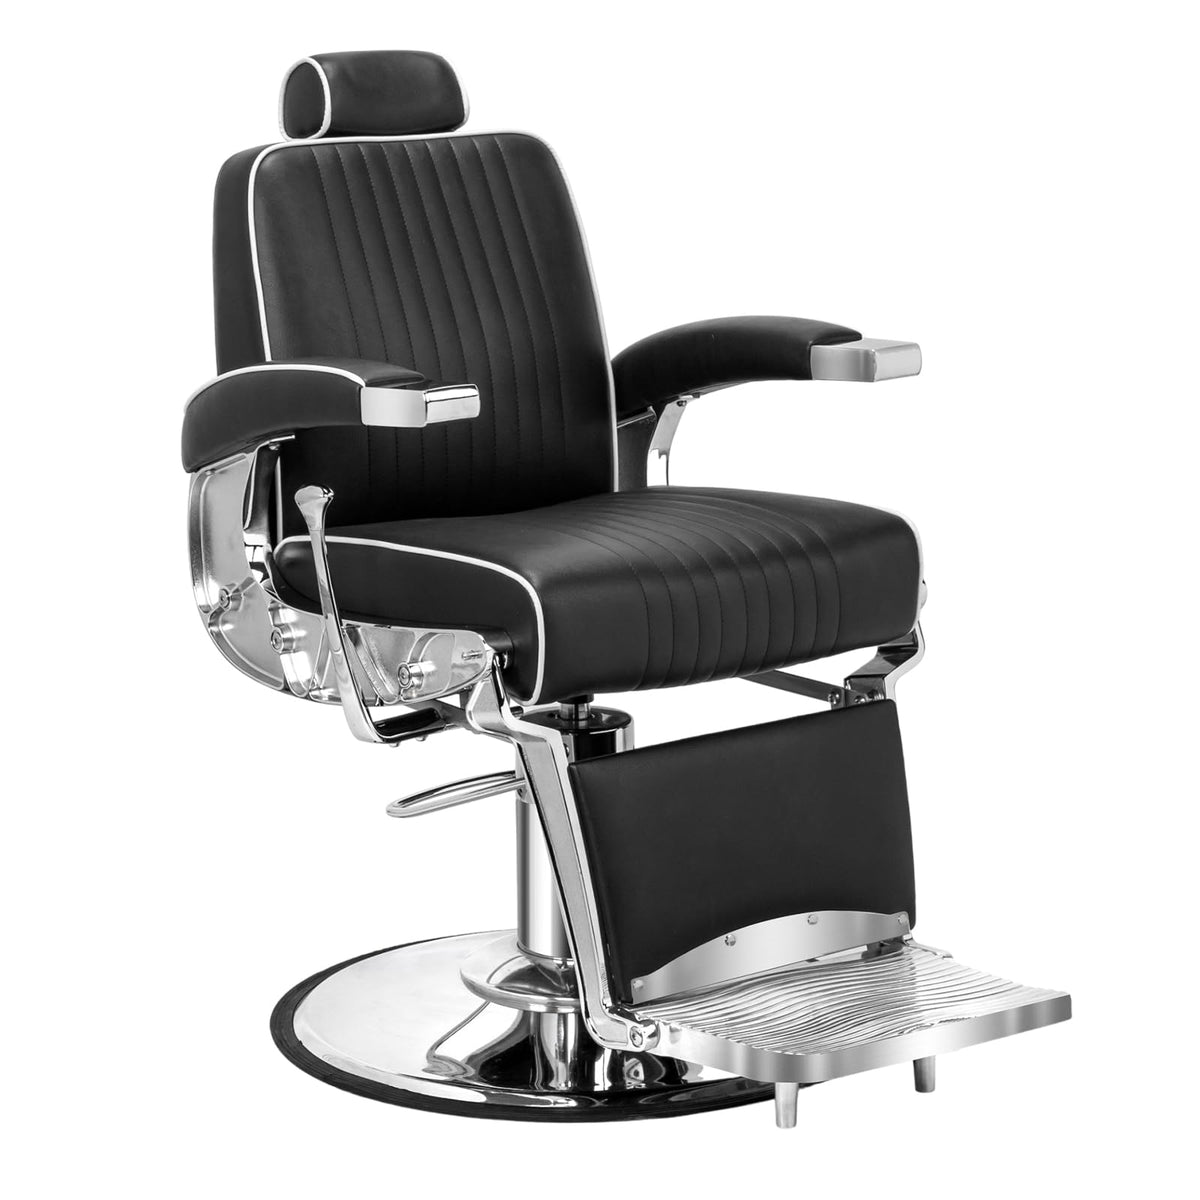 OmySalon BC1411 Sleek Heavy Duty Hydraulic Reclining Barber Chair